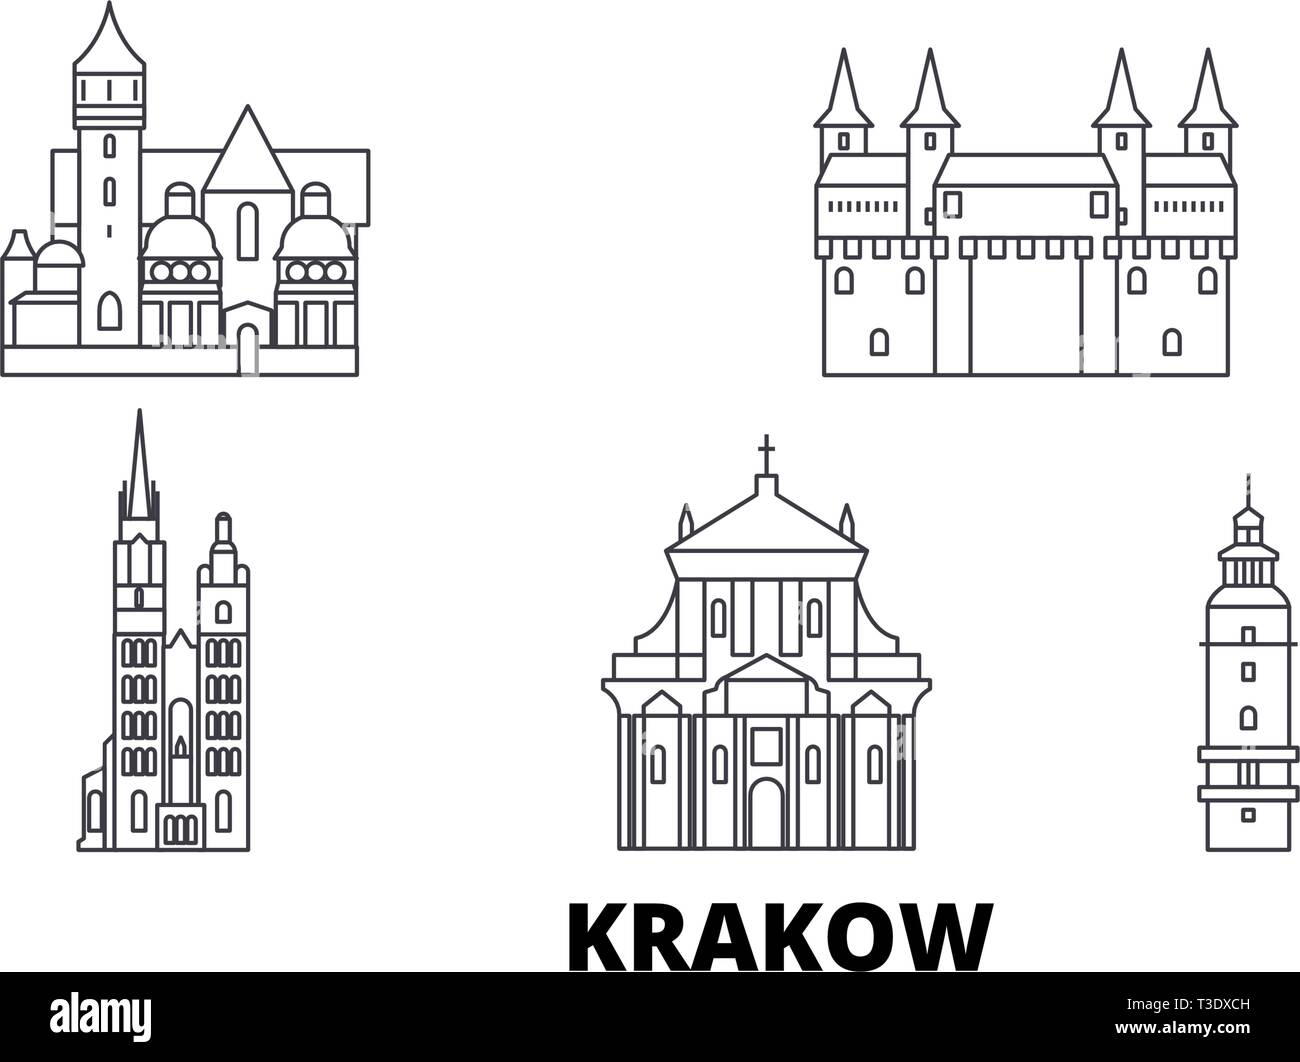 Poland, Krakow line travel skyline set. Poland, Krakow outline city vector illustration, symbol, travel sights, landmarks. Stock Vector